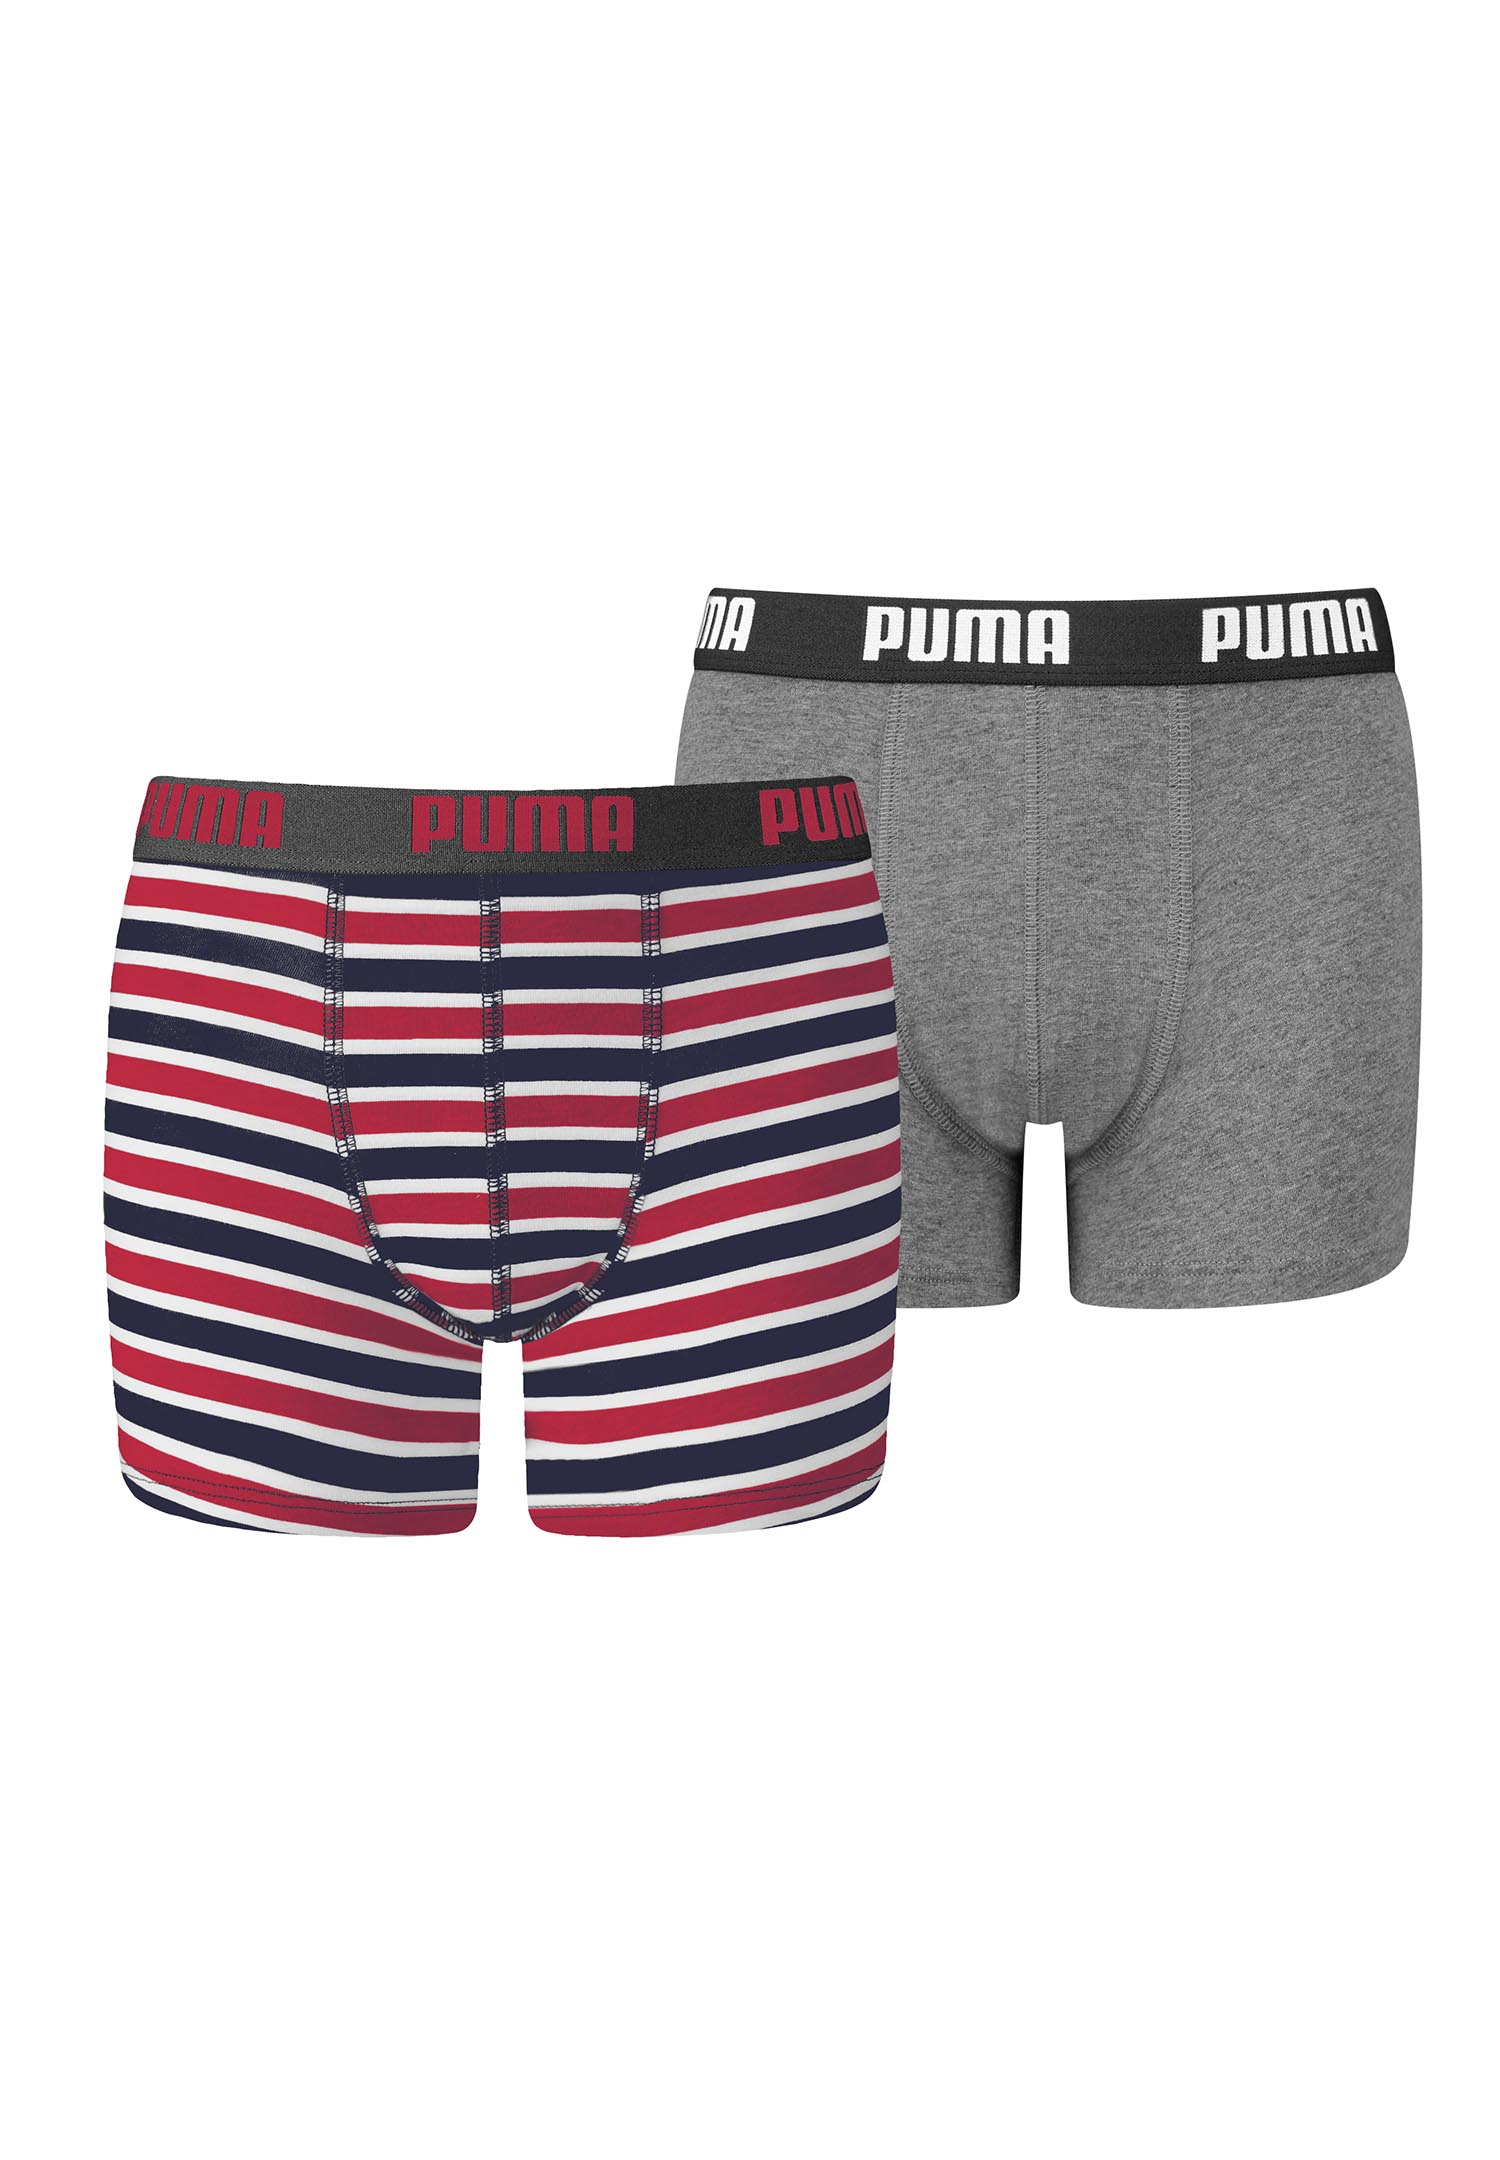 Puma Basic Boxer Printed Stripes Boxershorts Jungen Kinder Unterhose 2 er Pack 